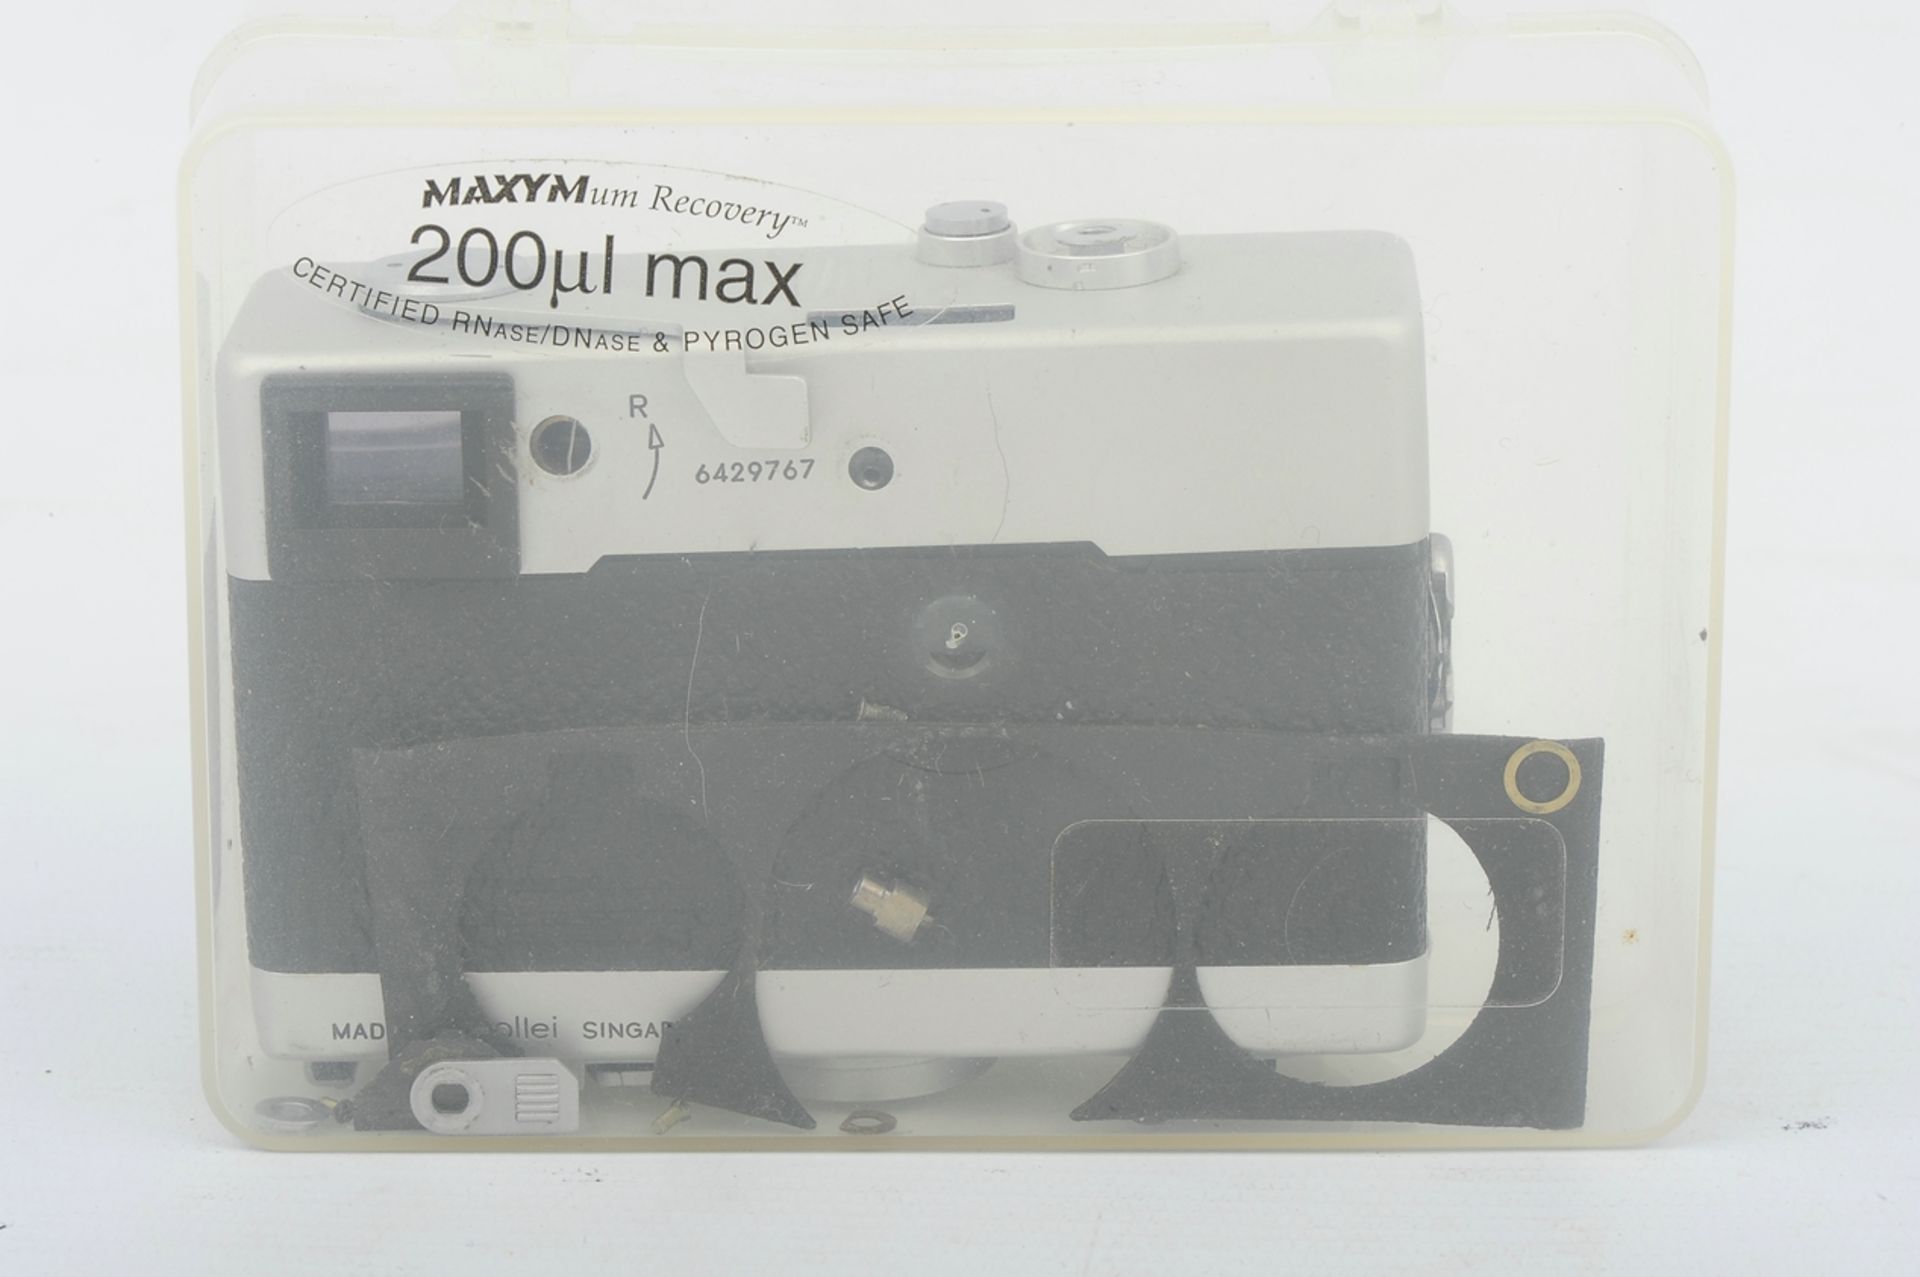 6teiliges Konvolut "ROLLEI" - Kameras und Zubehör, bestehend aus: 1 x 35T (unvollendete Reparatur), - Image 18 of 19